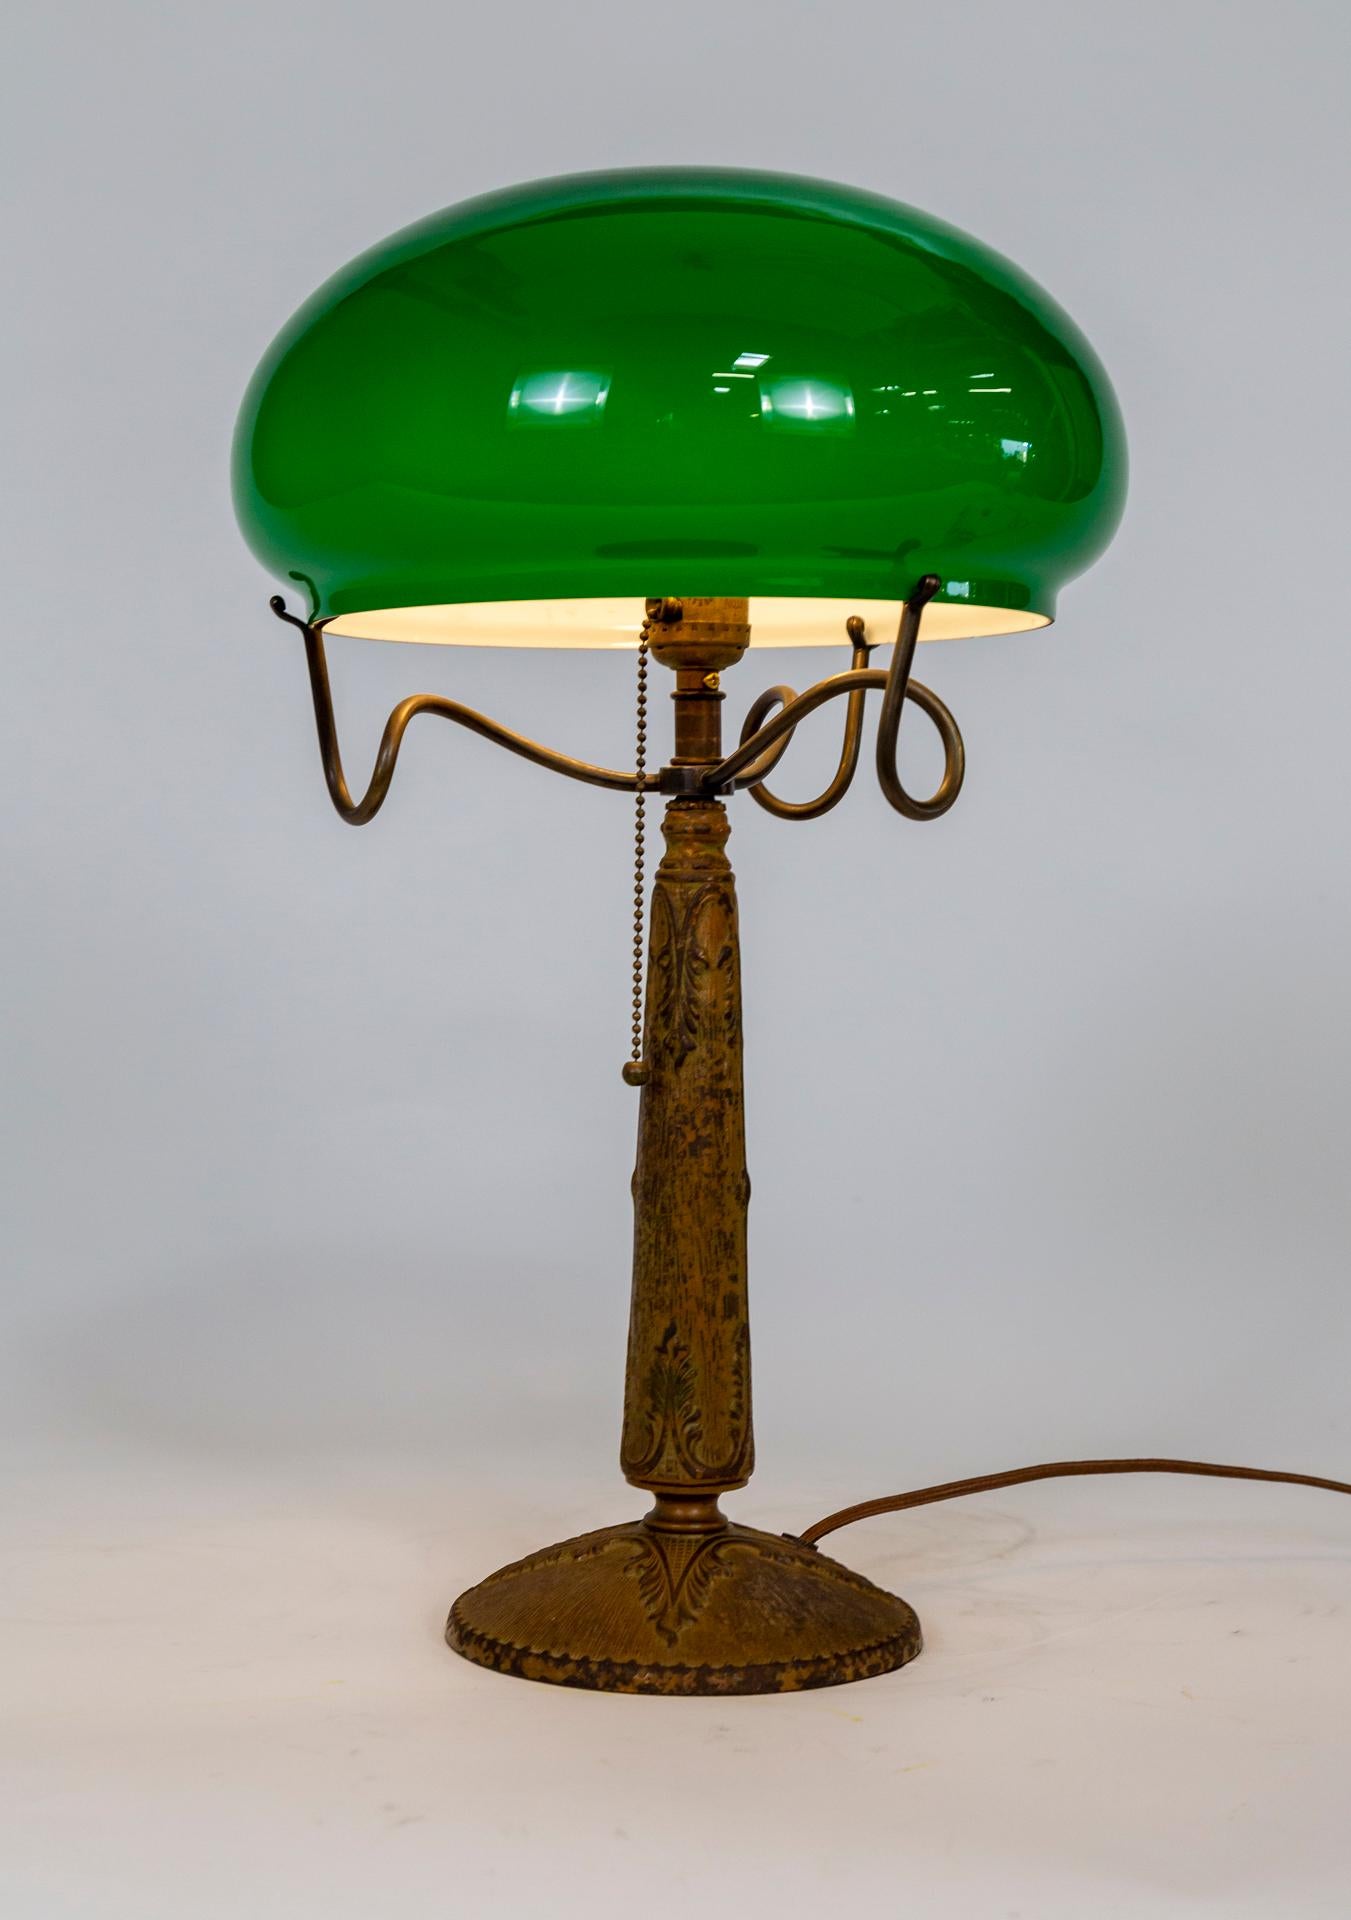 Une lampe de table Art Nouveau avec une base détaillée en métal moulé et un support unique en verre en laiton sous la forme de trois tiges enroulées. L'abat-jour en verre vert a la forme d'un chapeau de champignon. Une douille à ampoule moyenne avec